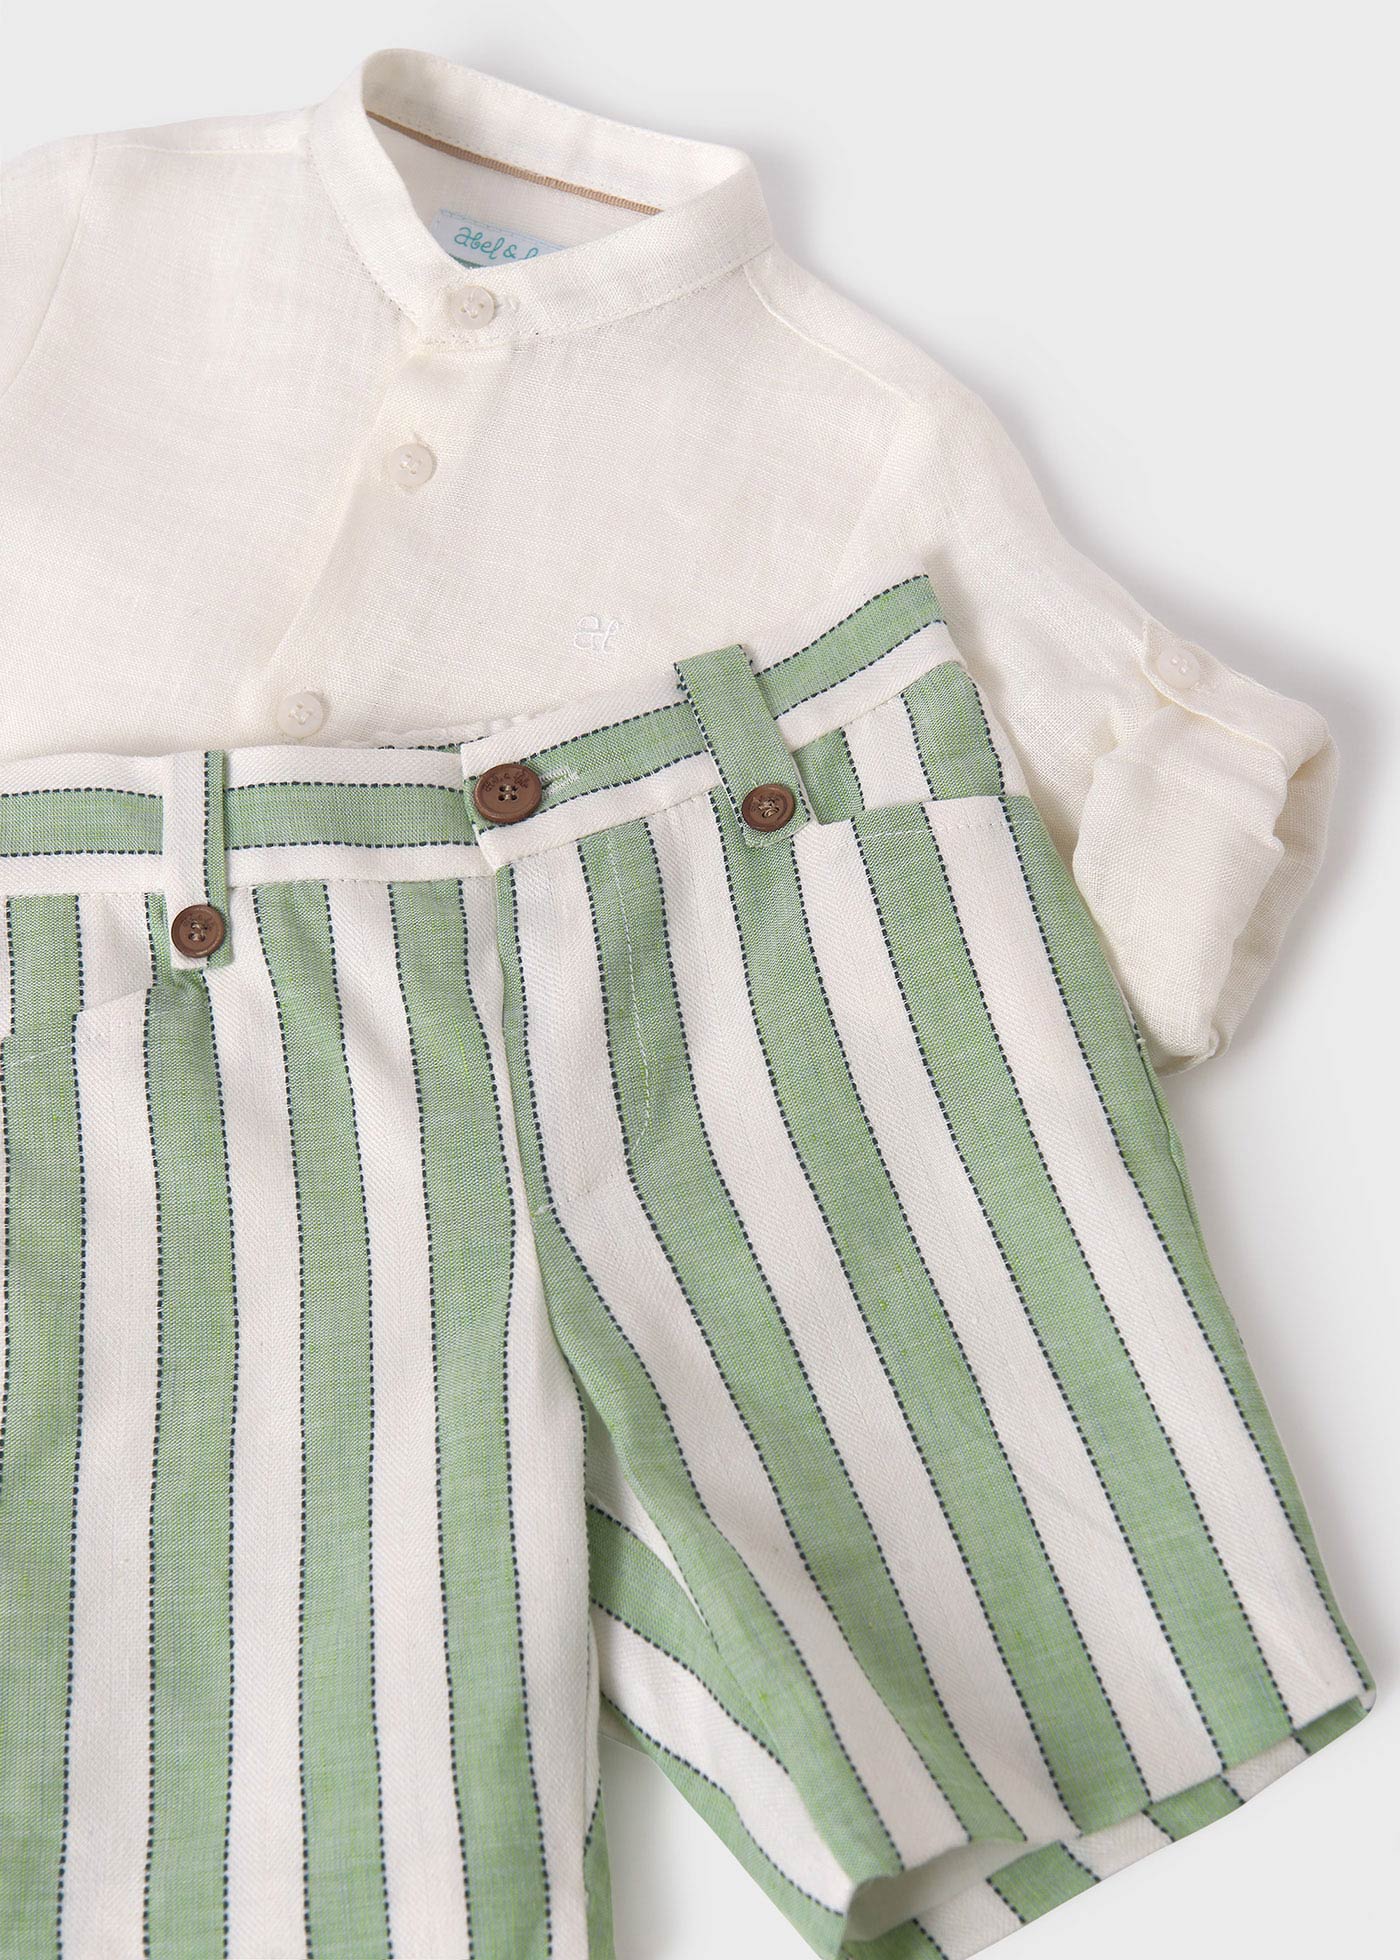 Completo camicia bermuda a righe lino bambino